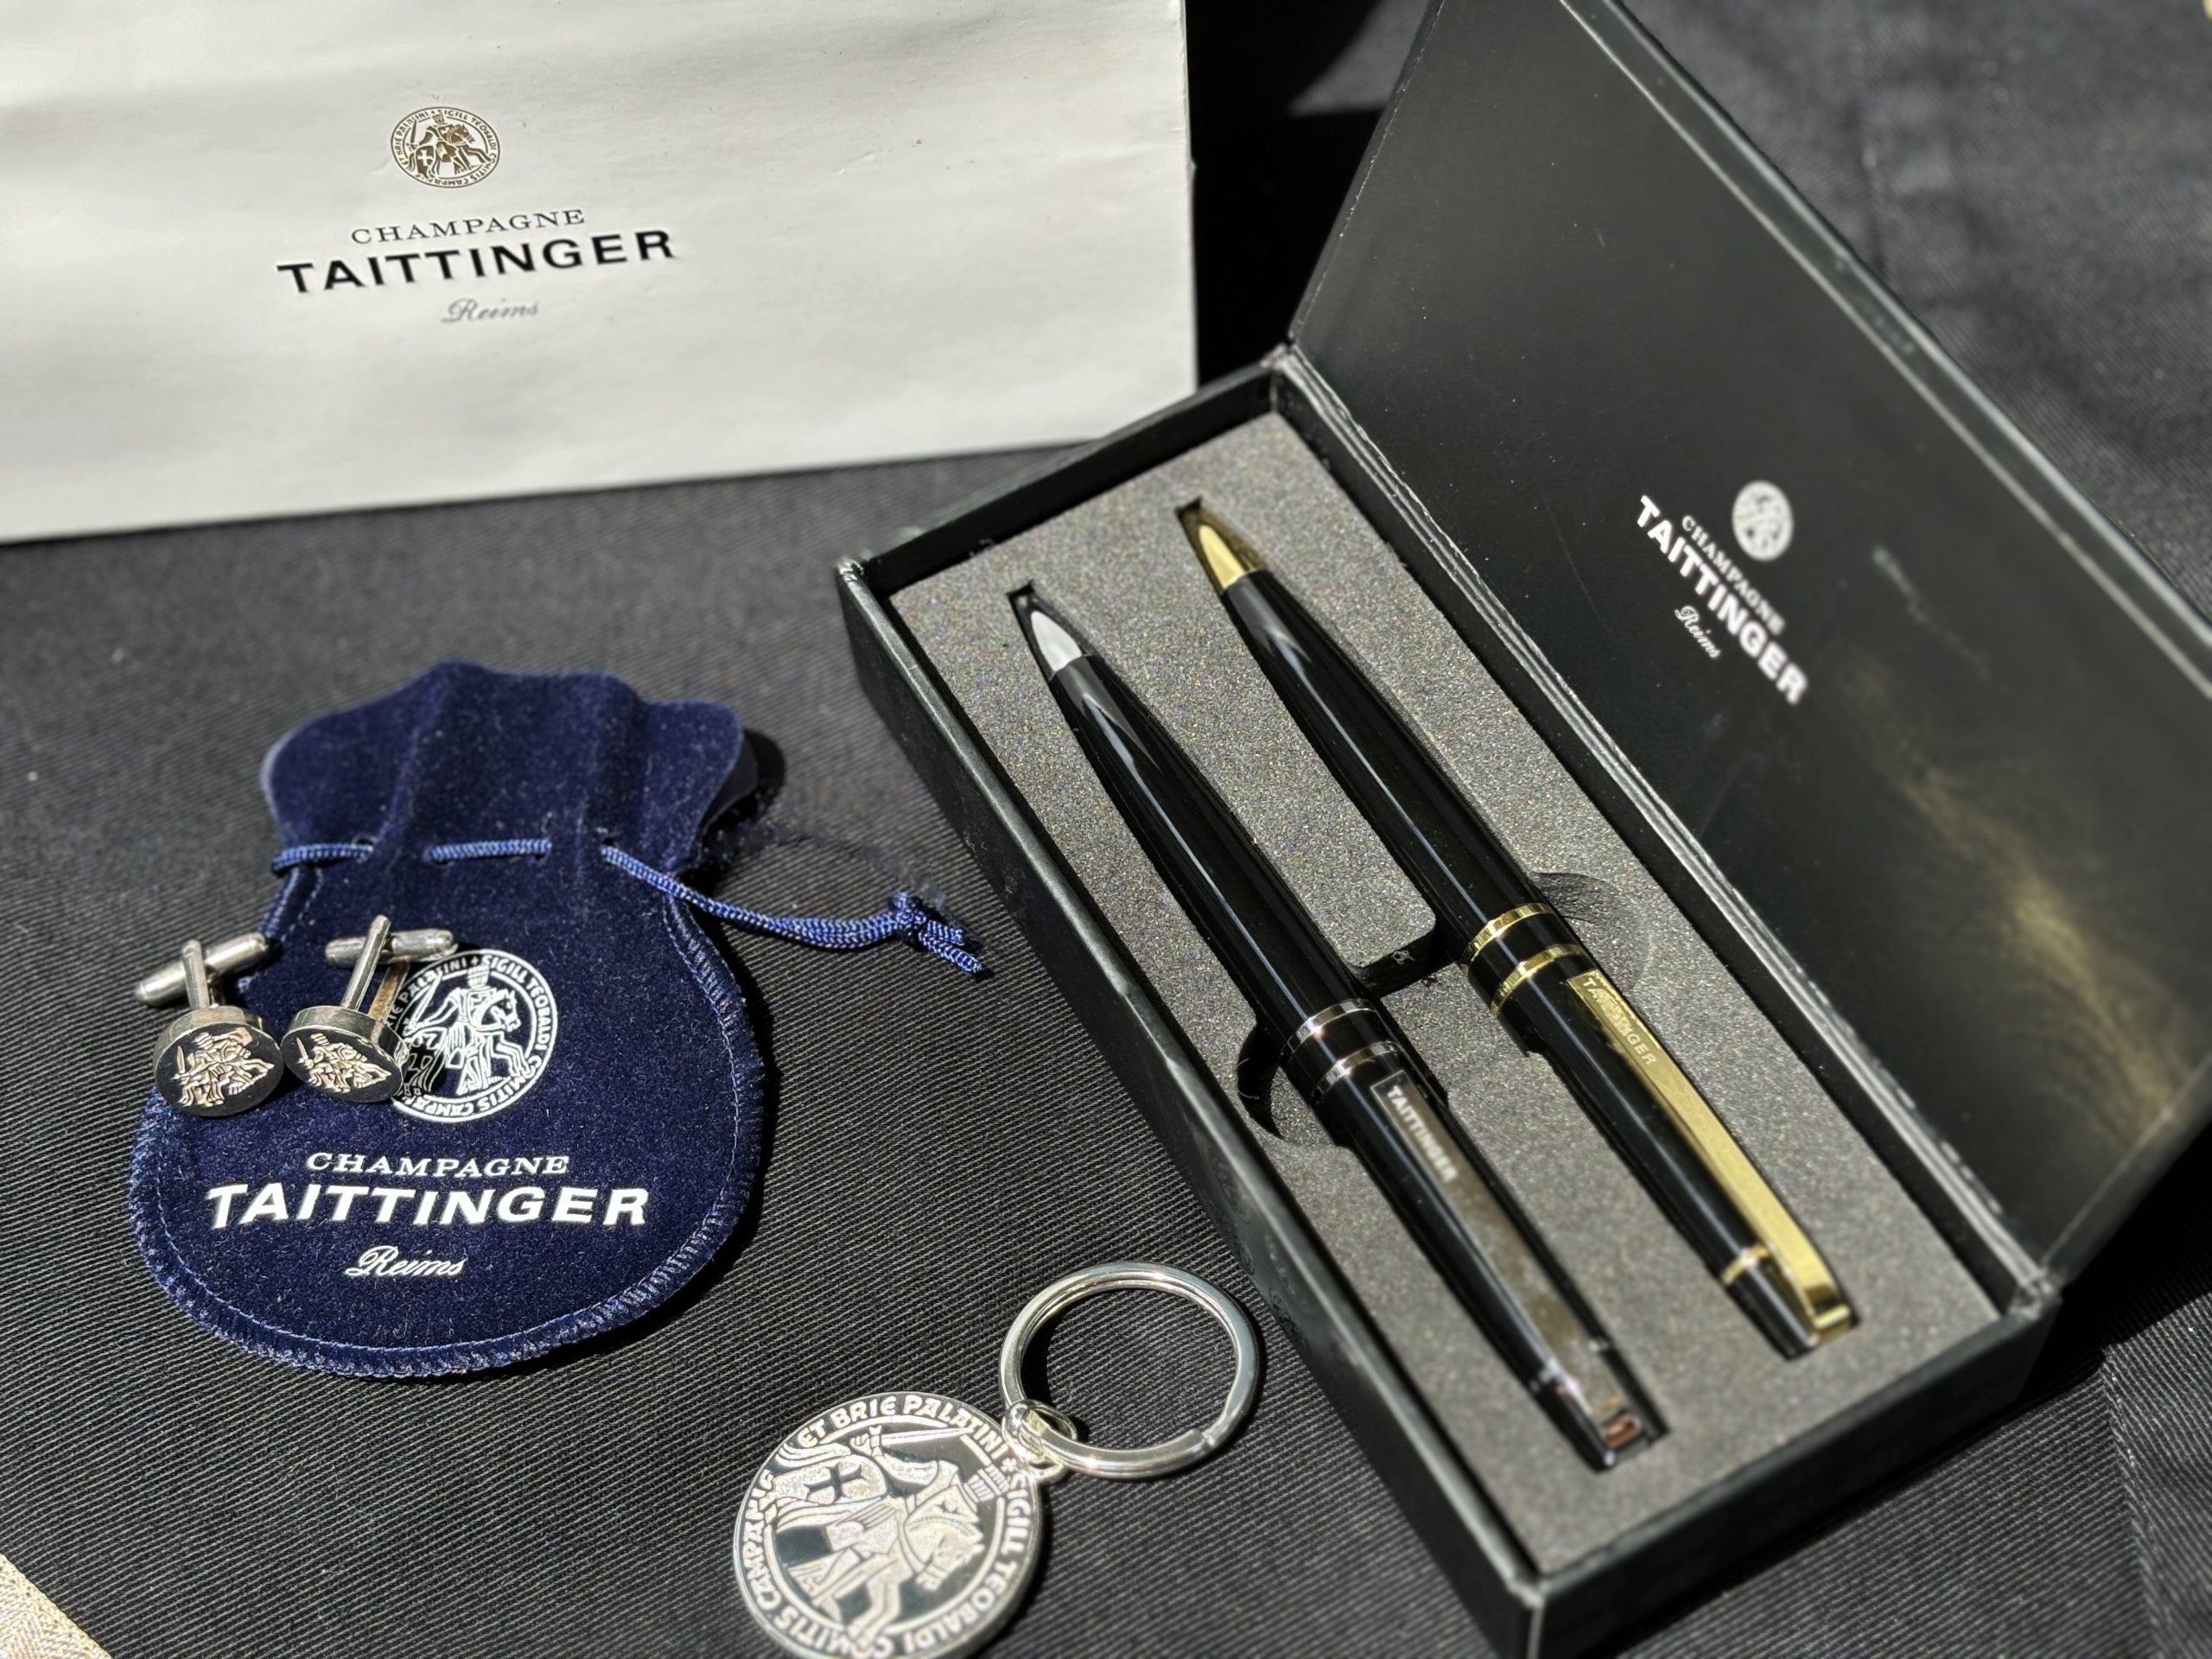 Taittinger Champagne ajándék szett – toll készlet, mandzsetta, kulcstartó – 54.600.-Ft